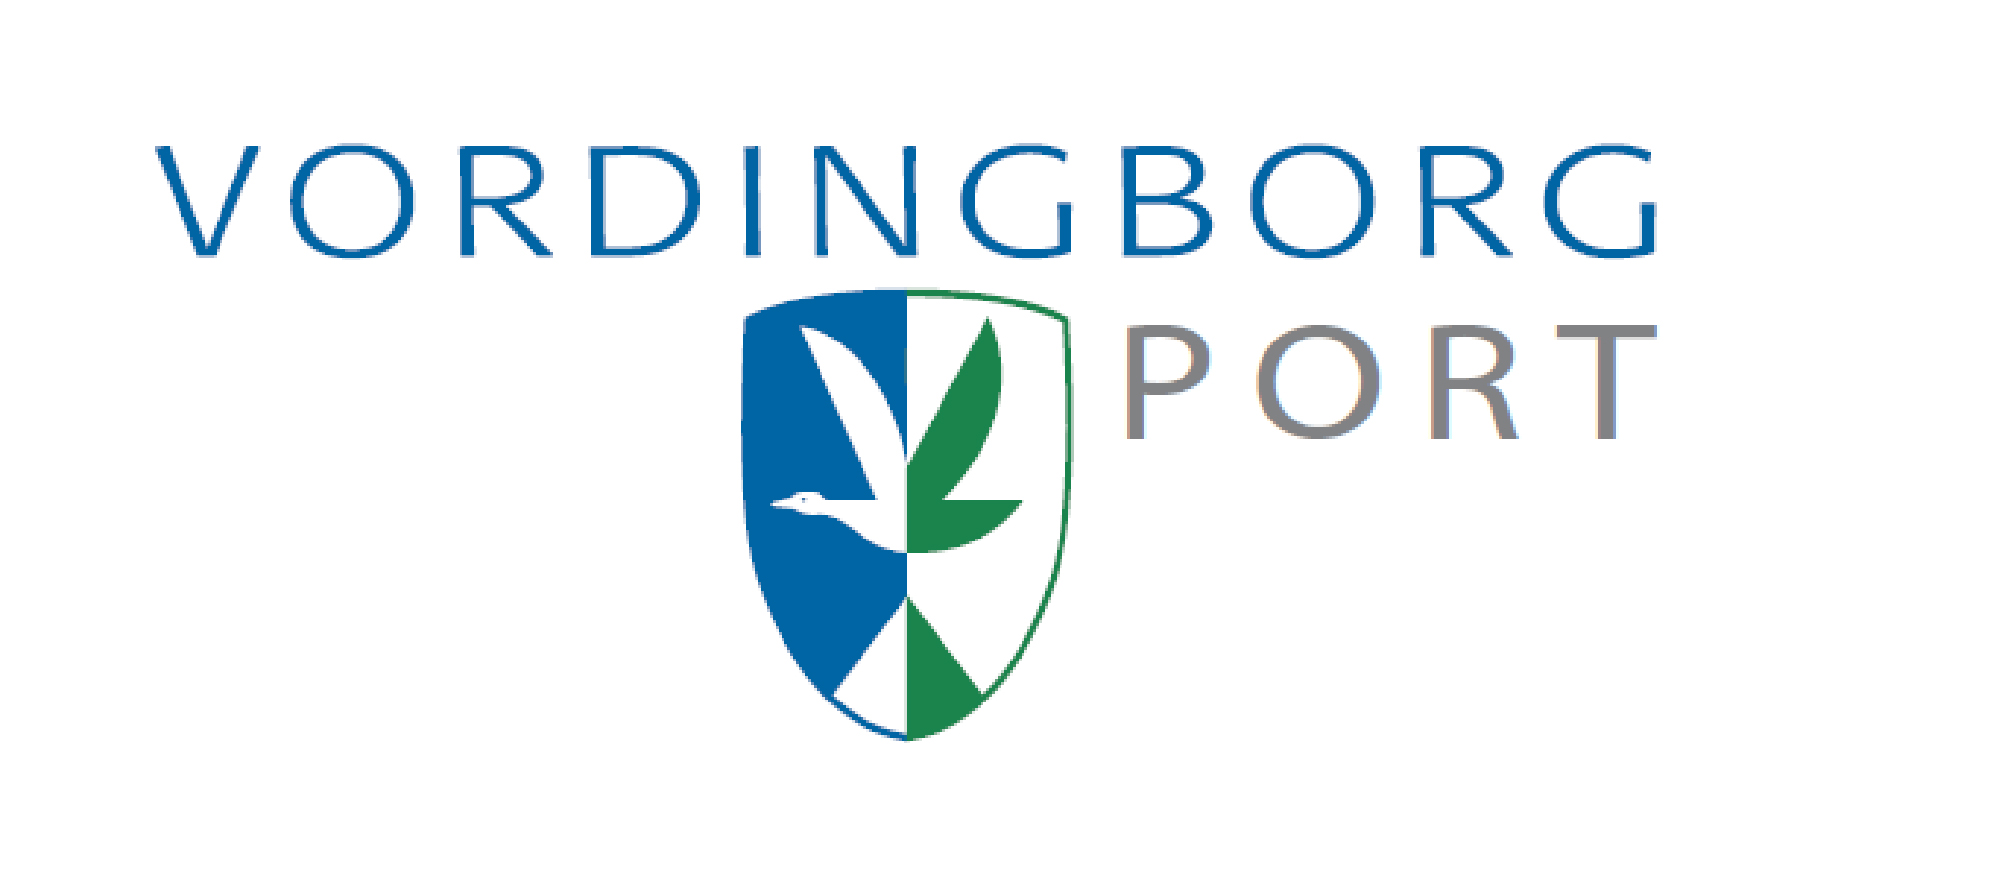 Vordingborg - logo